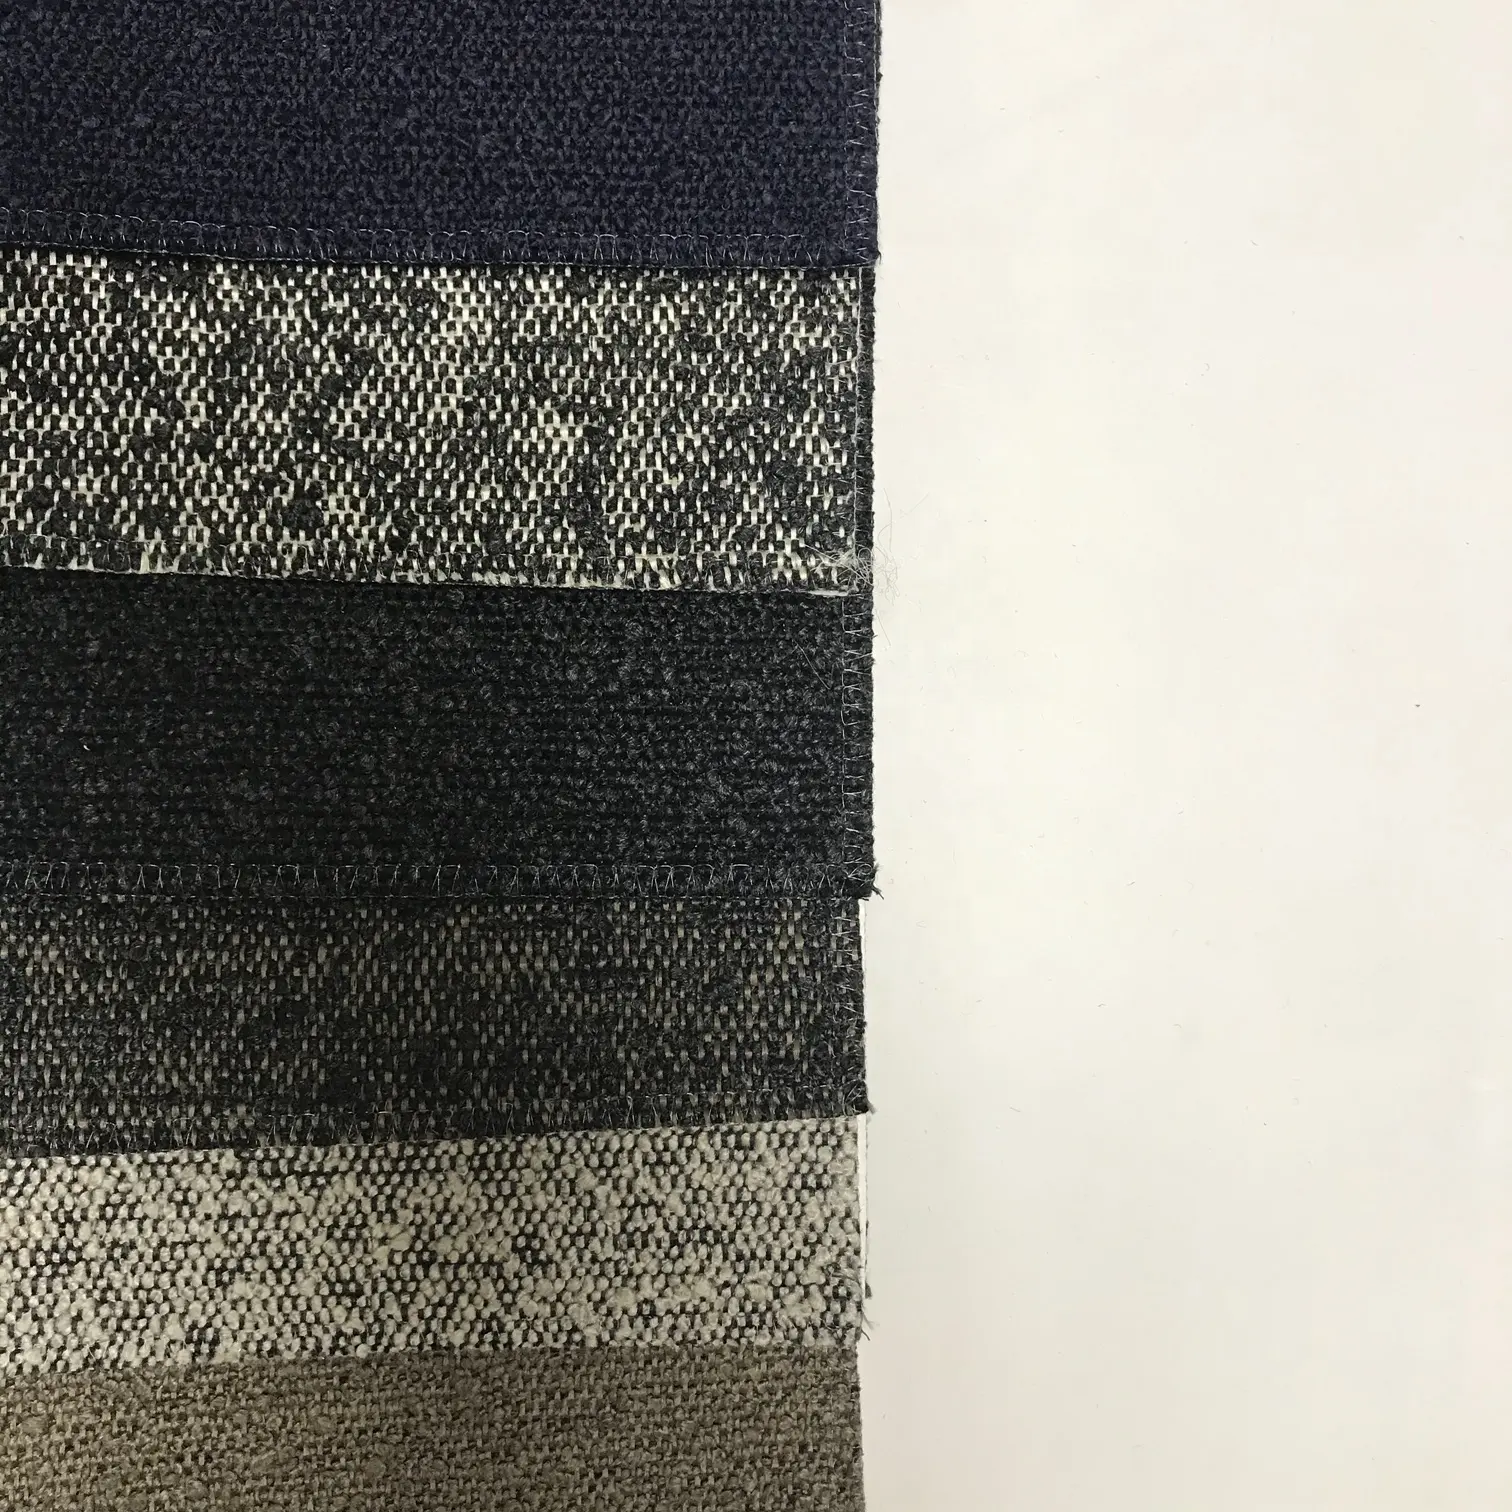 Para sofá, olhar tecido 2021 novo design 0… 100% poliéster linho tecido